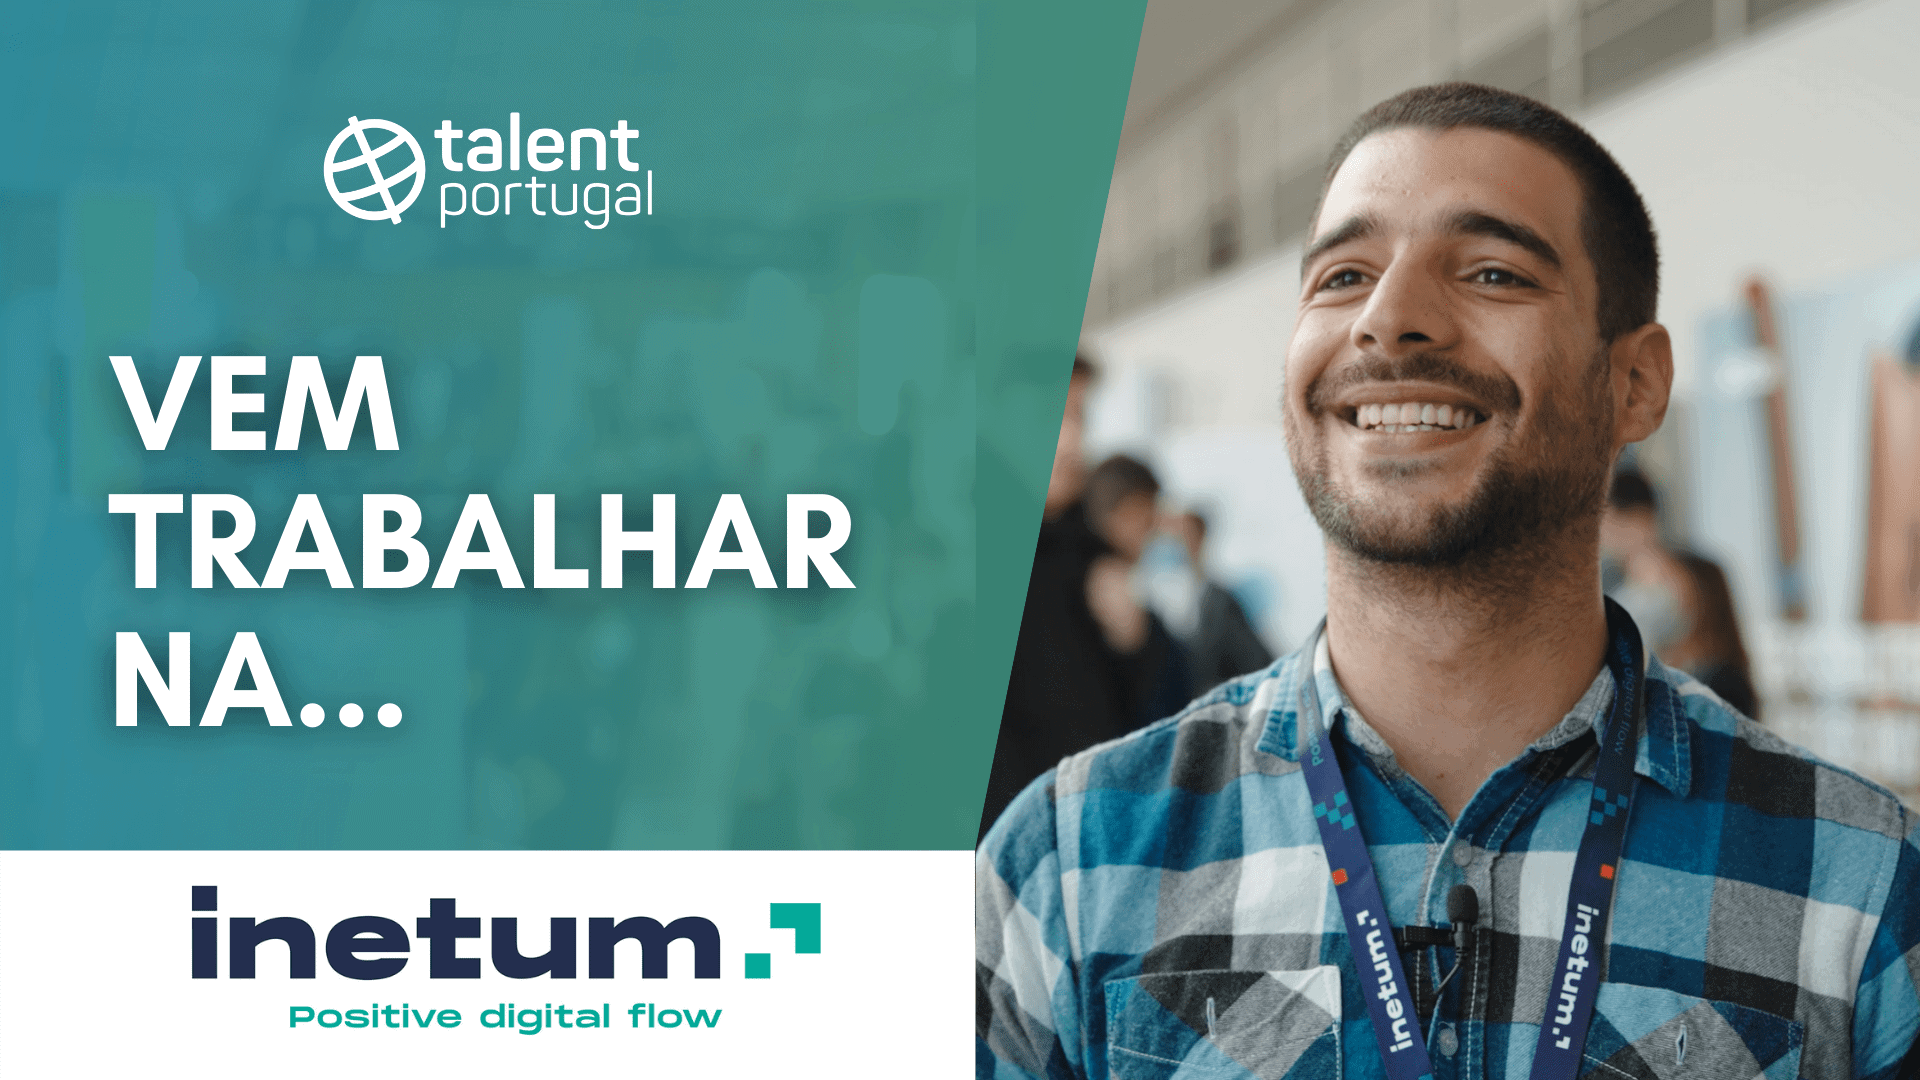 Inetum, tecnológica com projetos em todo o mundo | Talent Portugal